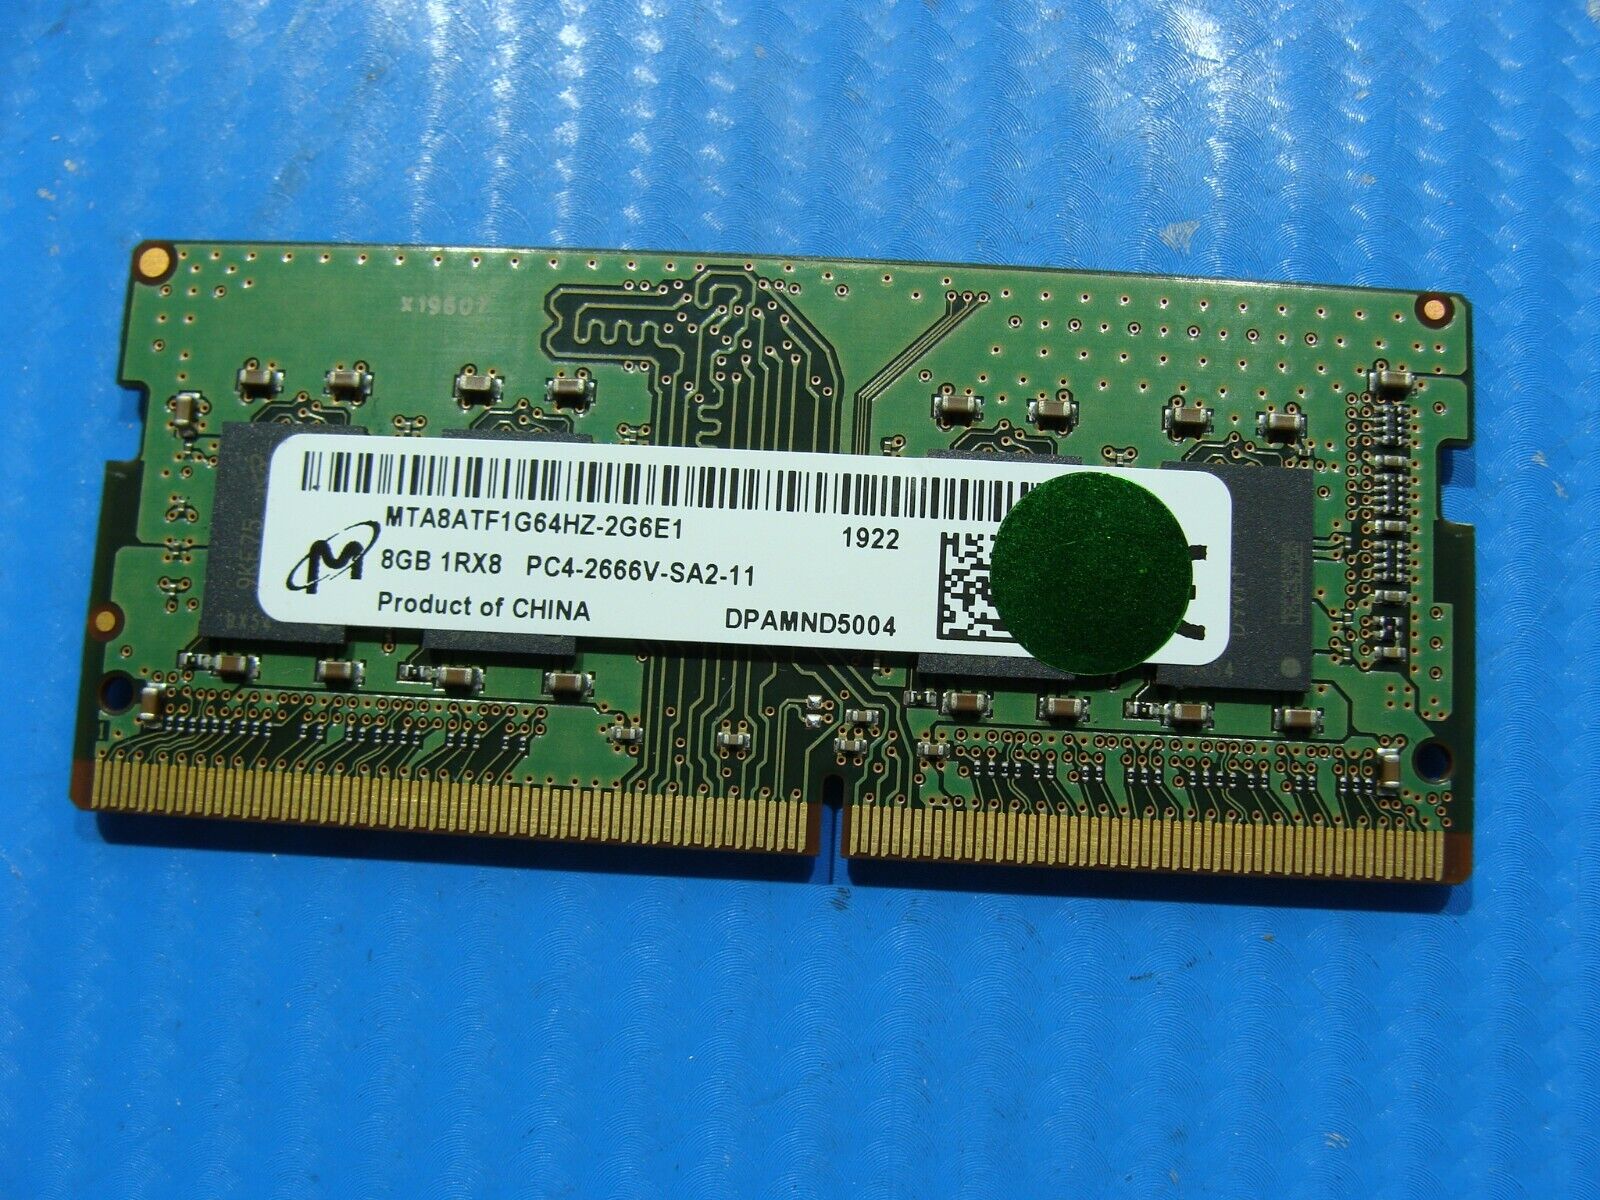 Dell 5270 AIO Micron 8GB 1Rx8 PC4-2666V Memory RAM SO-DIMM MTA8ATF1G64HZ-2G6E1